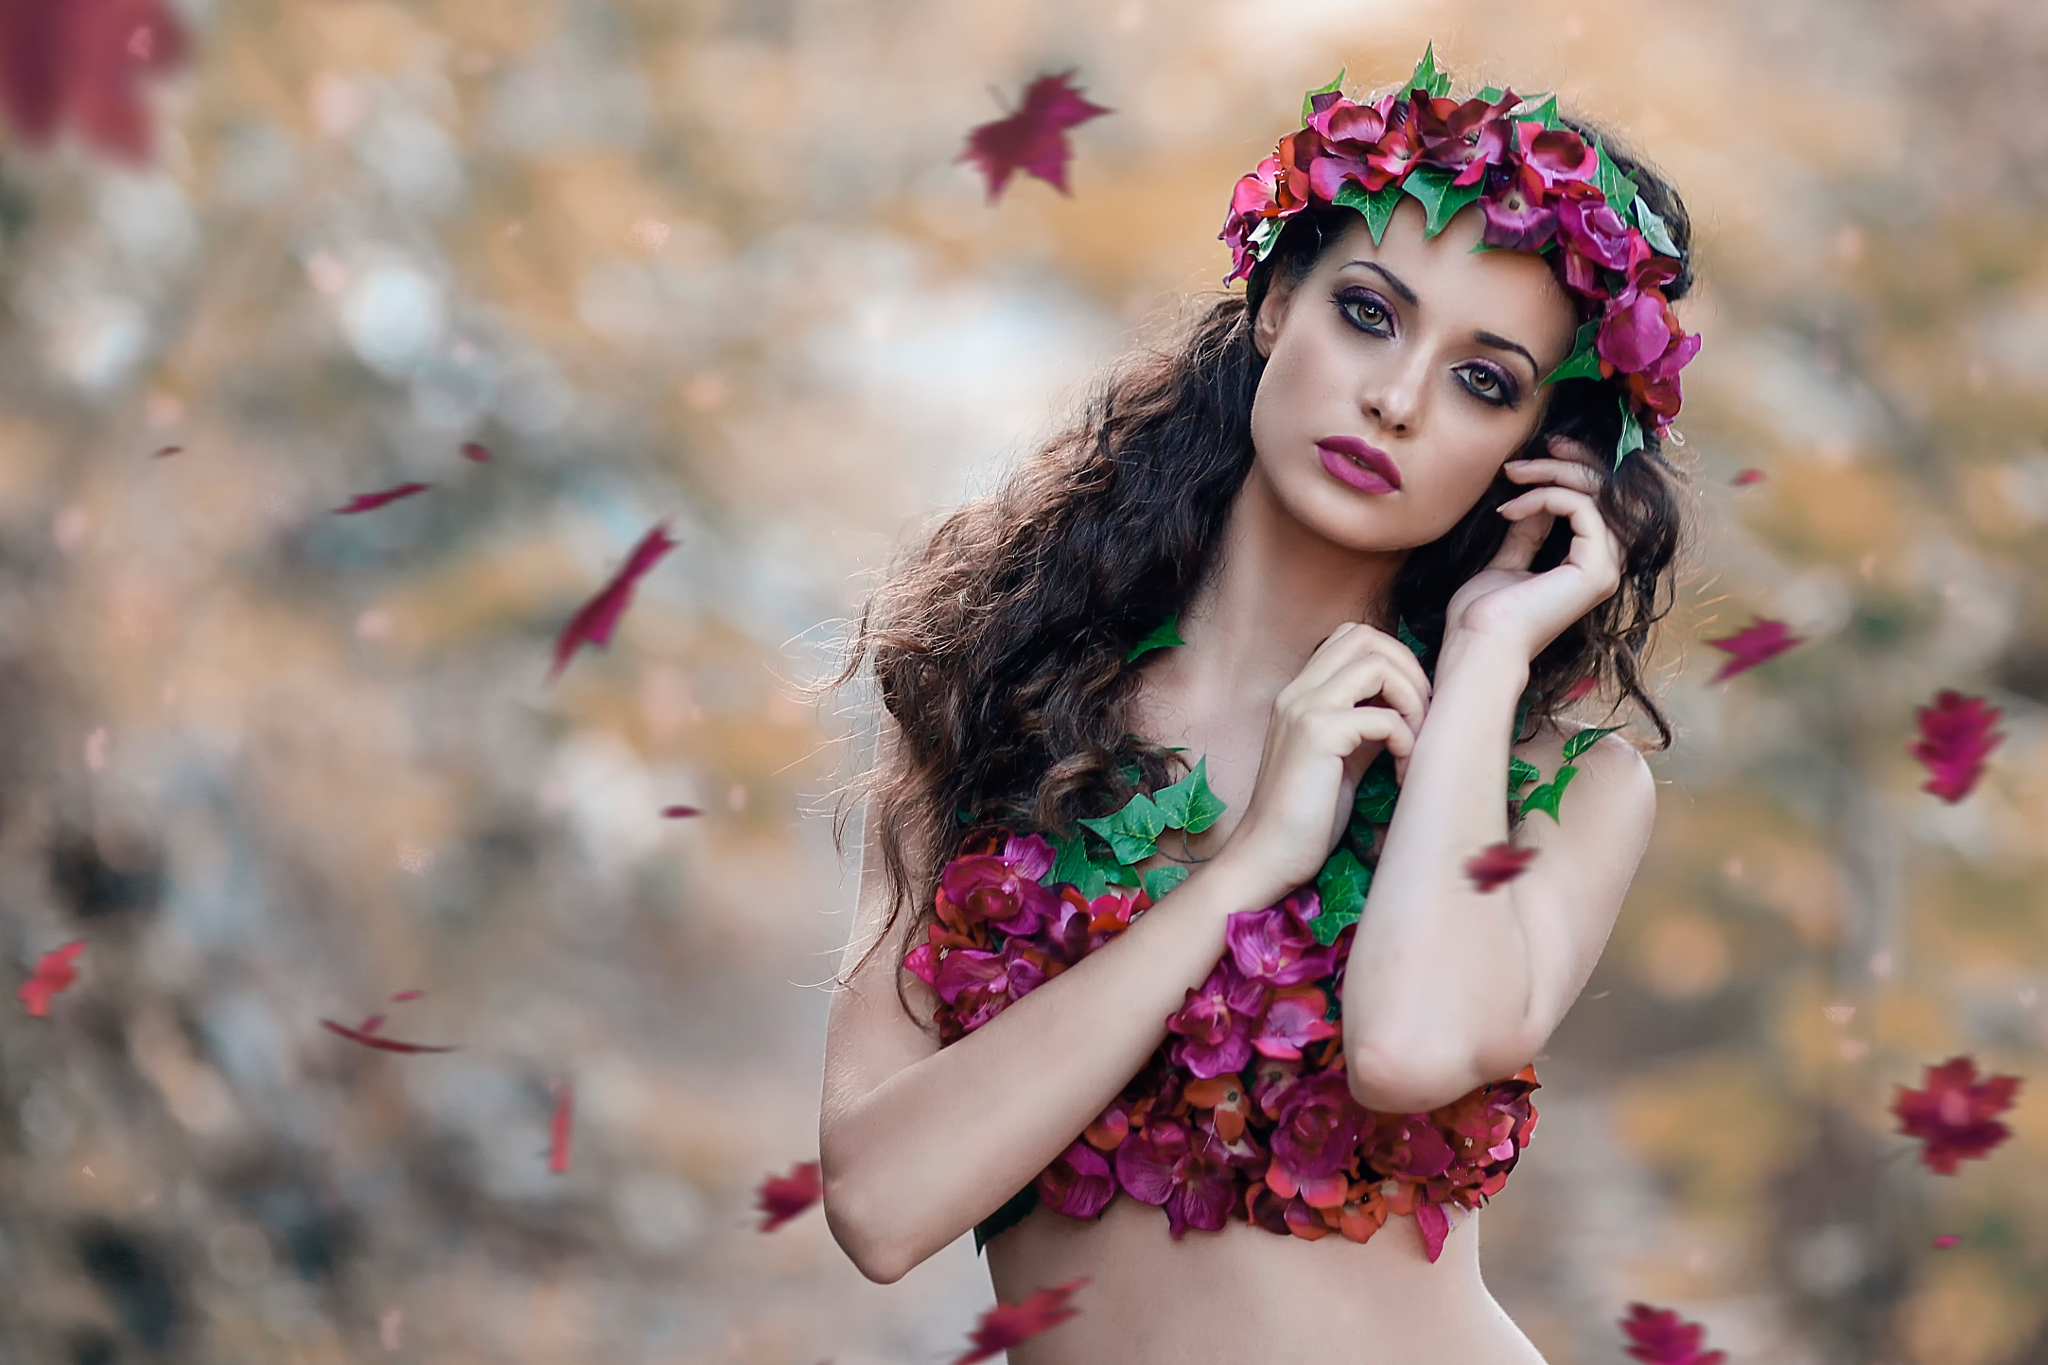 Free download wallpaper Flower, Fall, Wreath, Brunette, Model, Women, Lipstick on your PC desktop